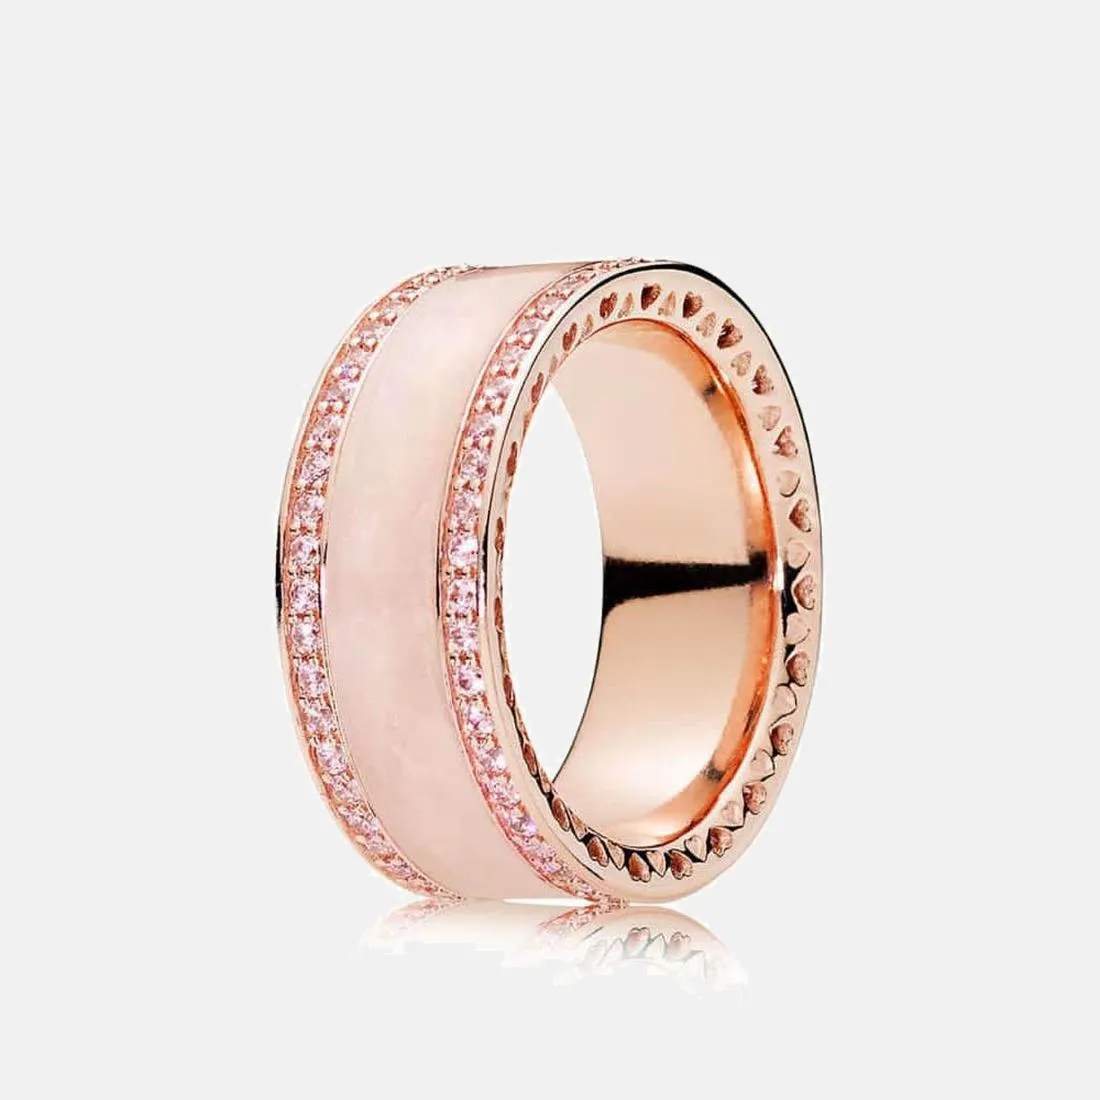 Feiner Schmuck, authentischer Ring aus 925er-Sterlingsilber, passend für Pandora Charm, Pave-Emaille-Roségold-Herzringe für Frauen, Verlobung, DIY-Eheringe